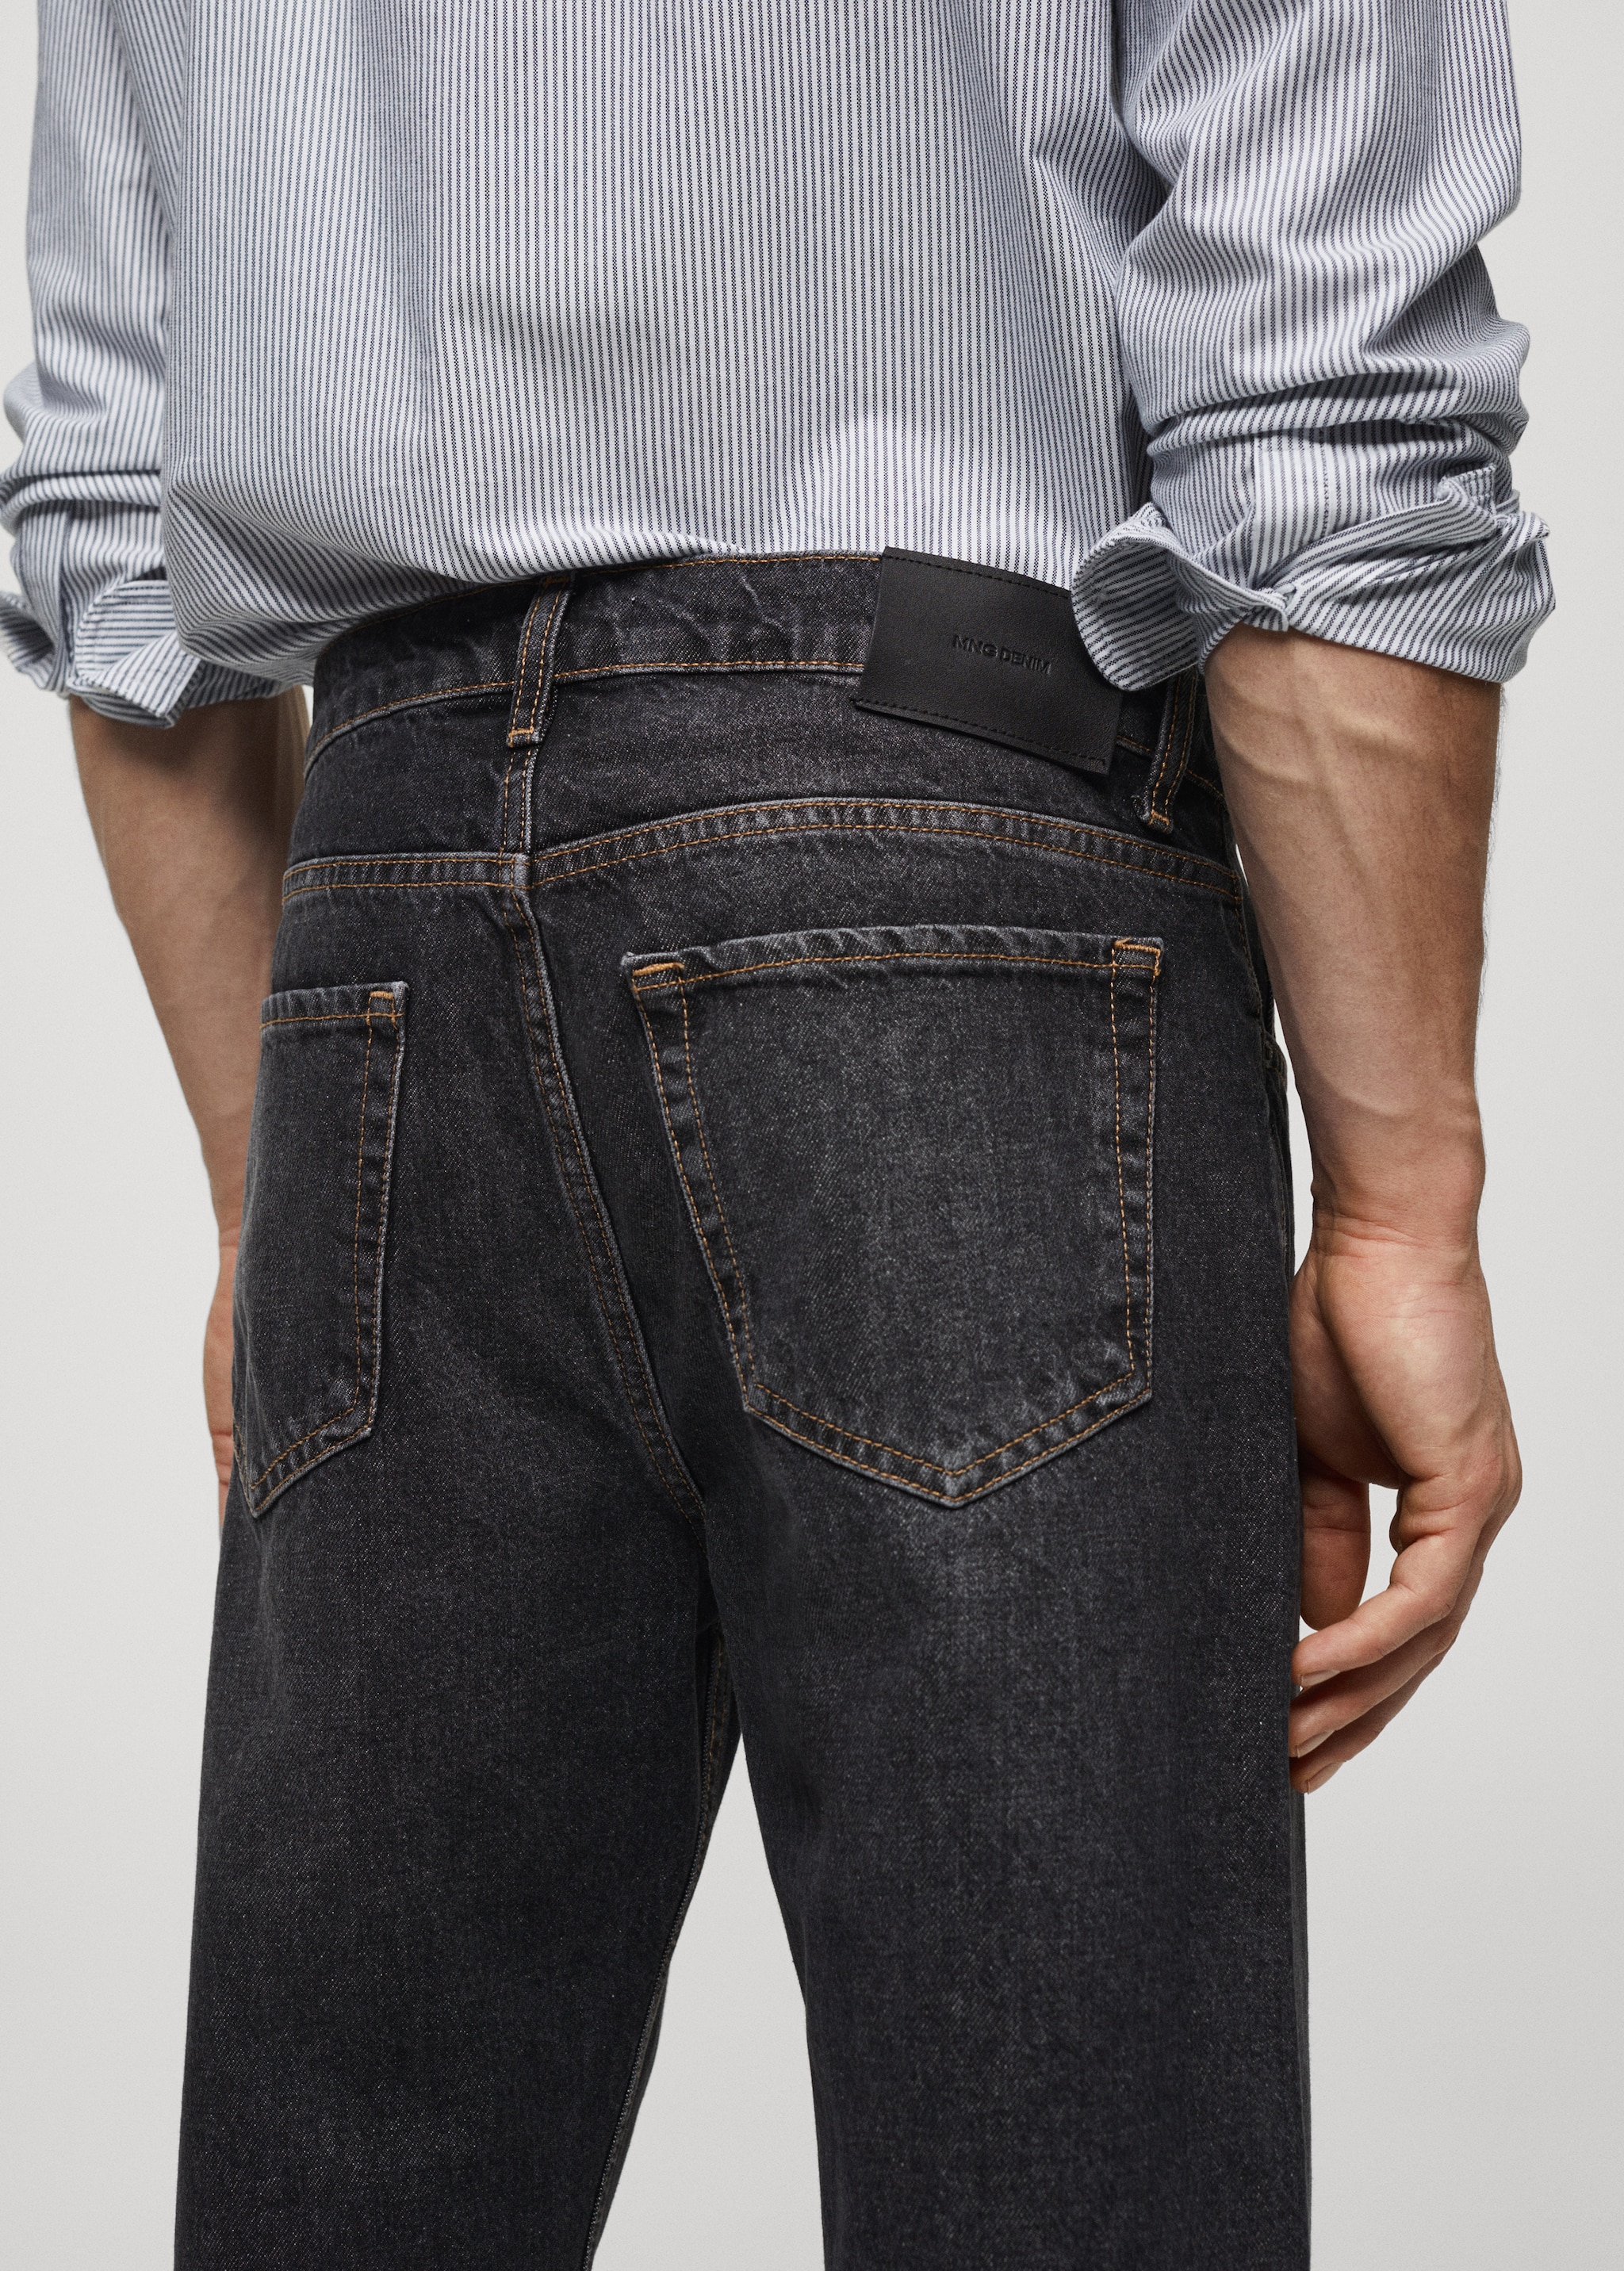 Jeans relaxed fit lavado oscuro - Detalle del artículo 4